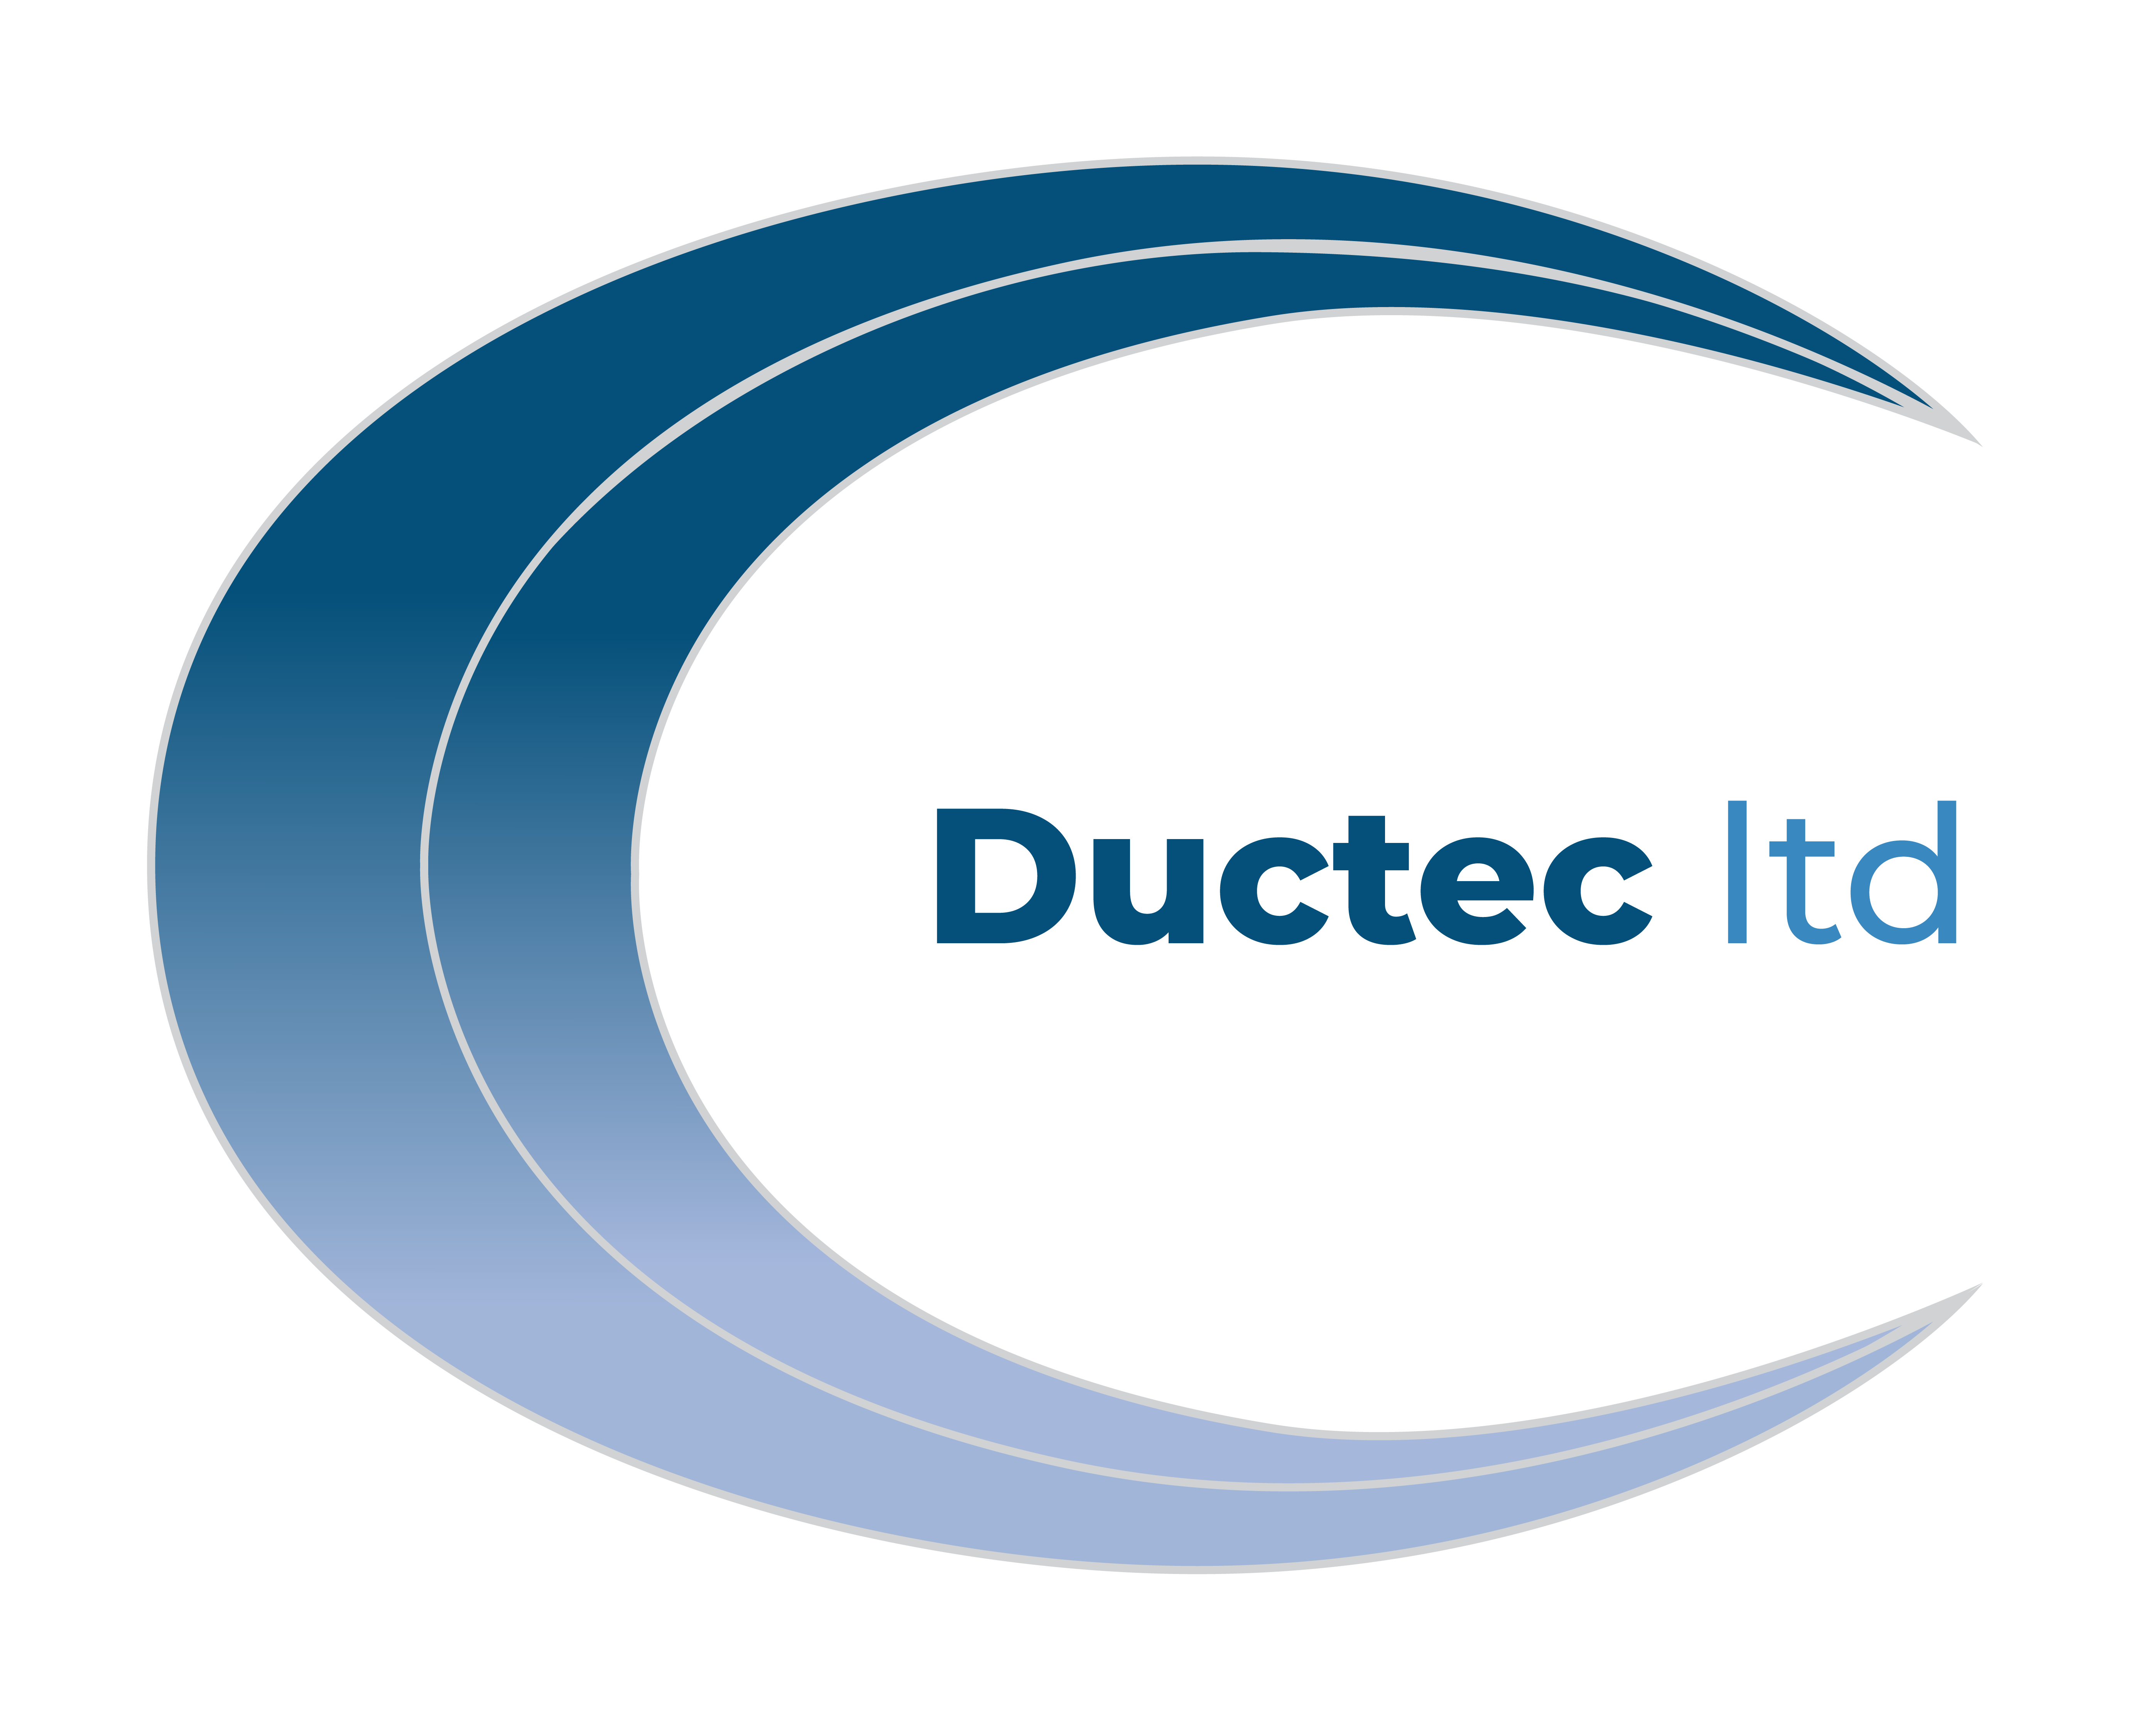 Ductec Ltd